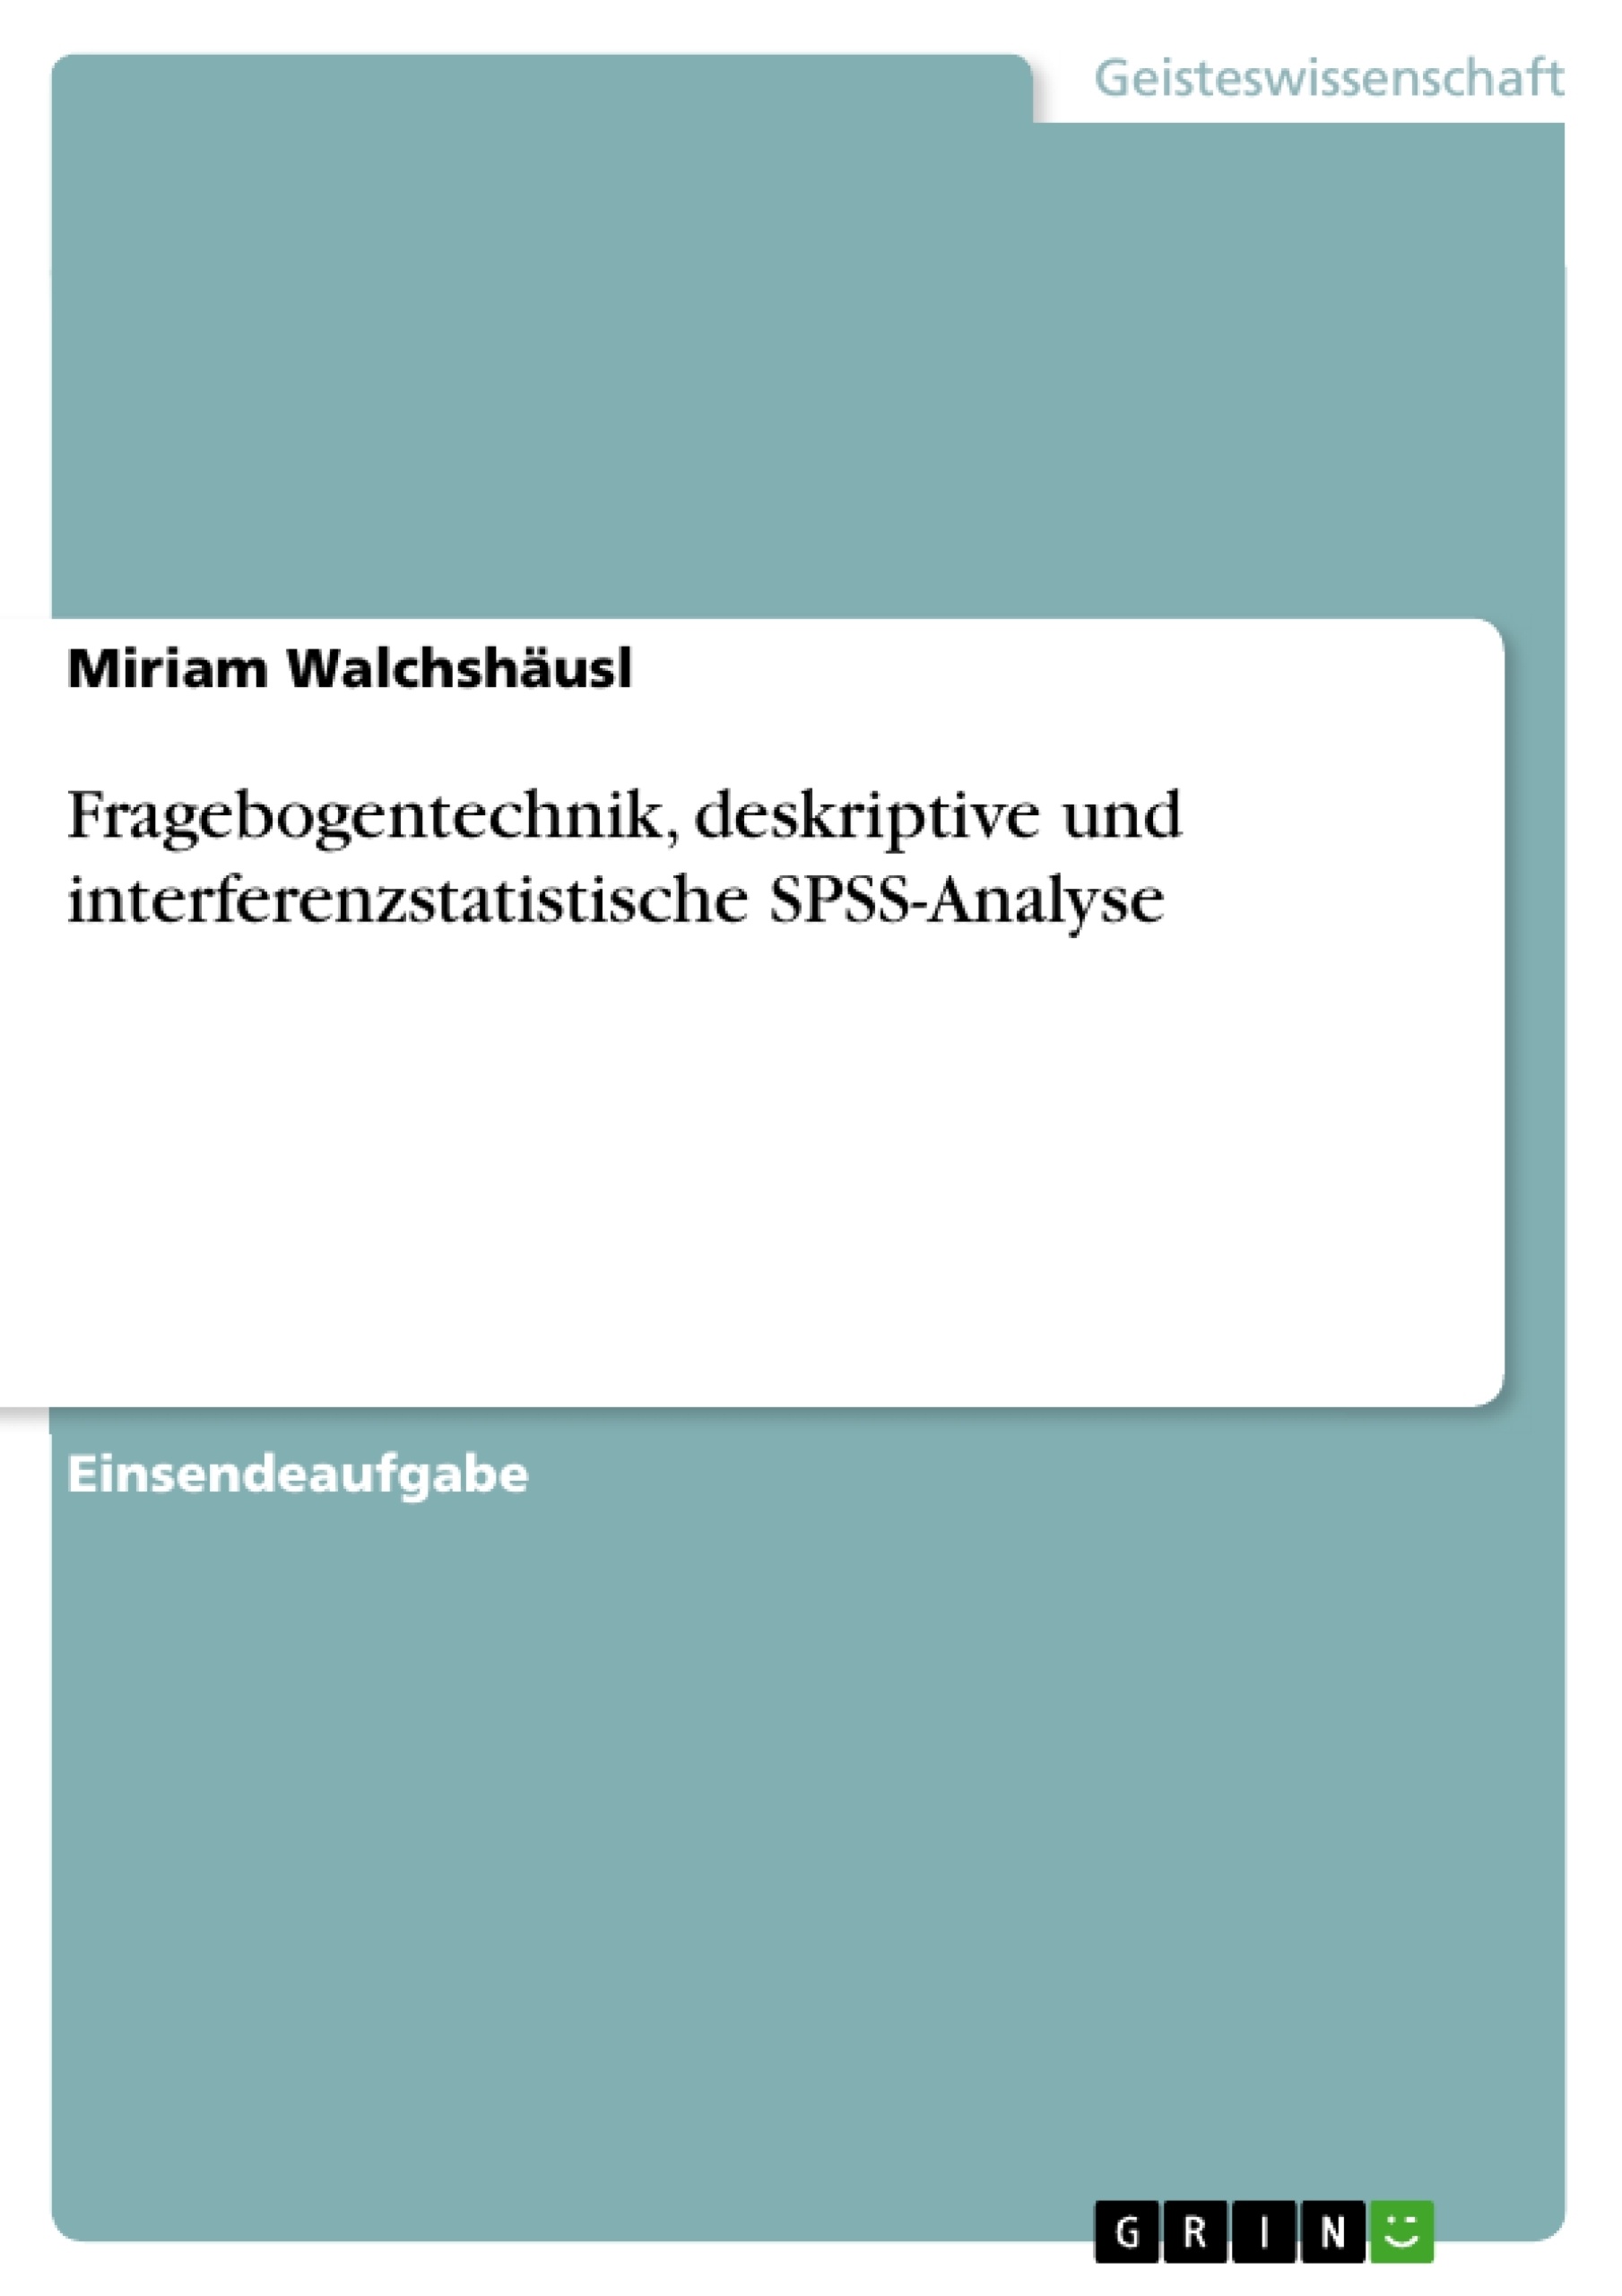 Title: Fragebogentechnik, deskriptive und interferenzstatistische SPSS-Analyse